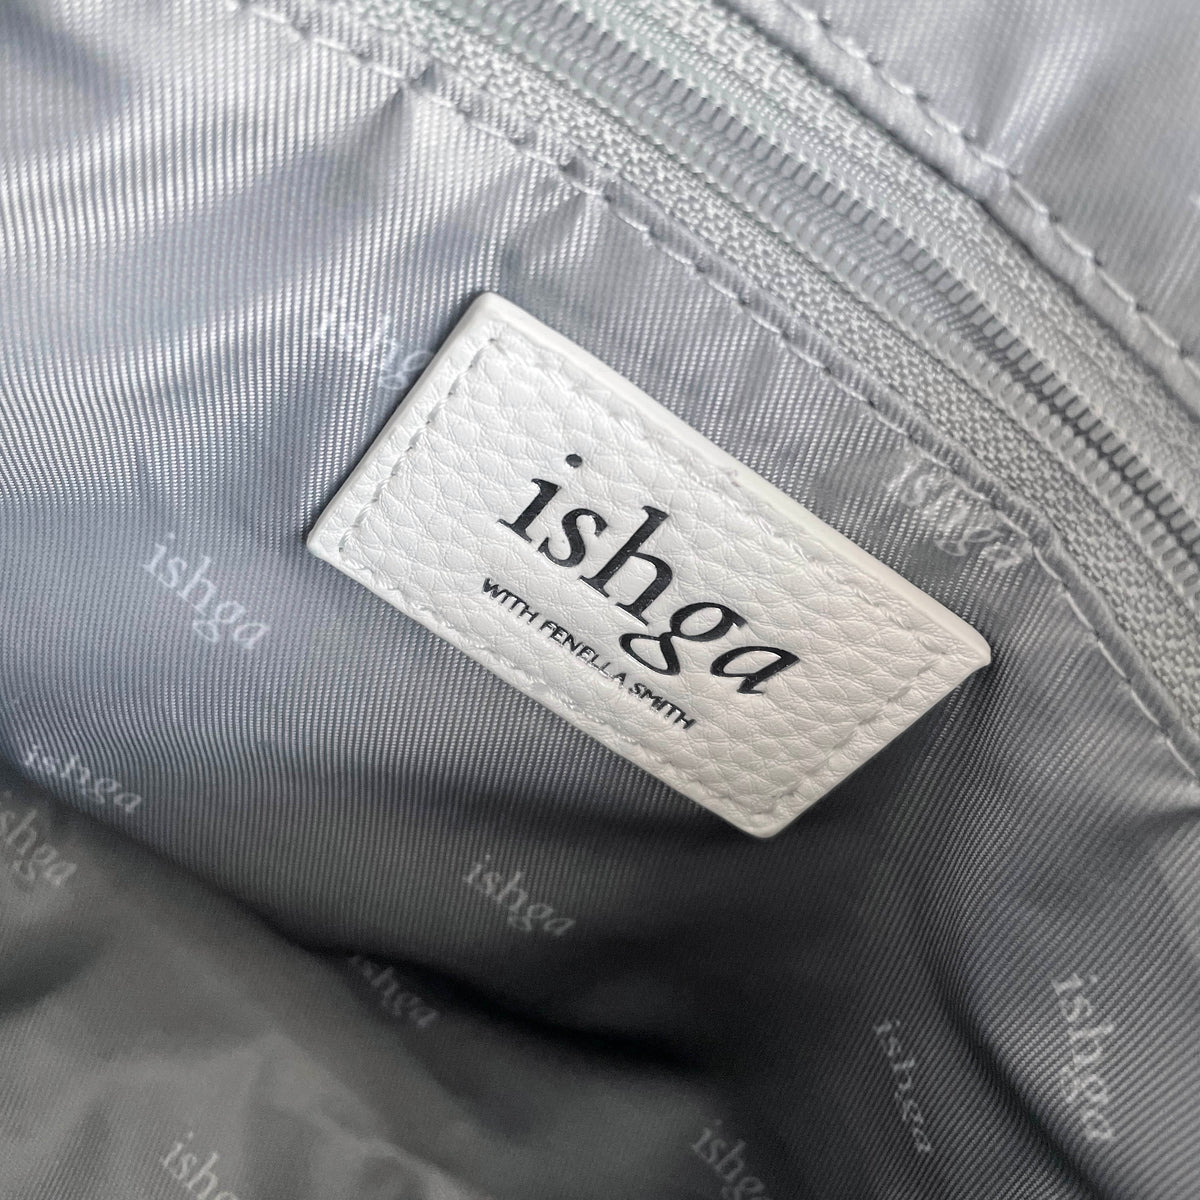 ishga label on inside of vegan leather wash bag